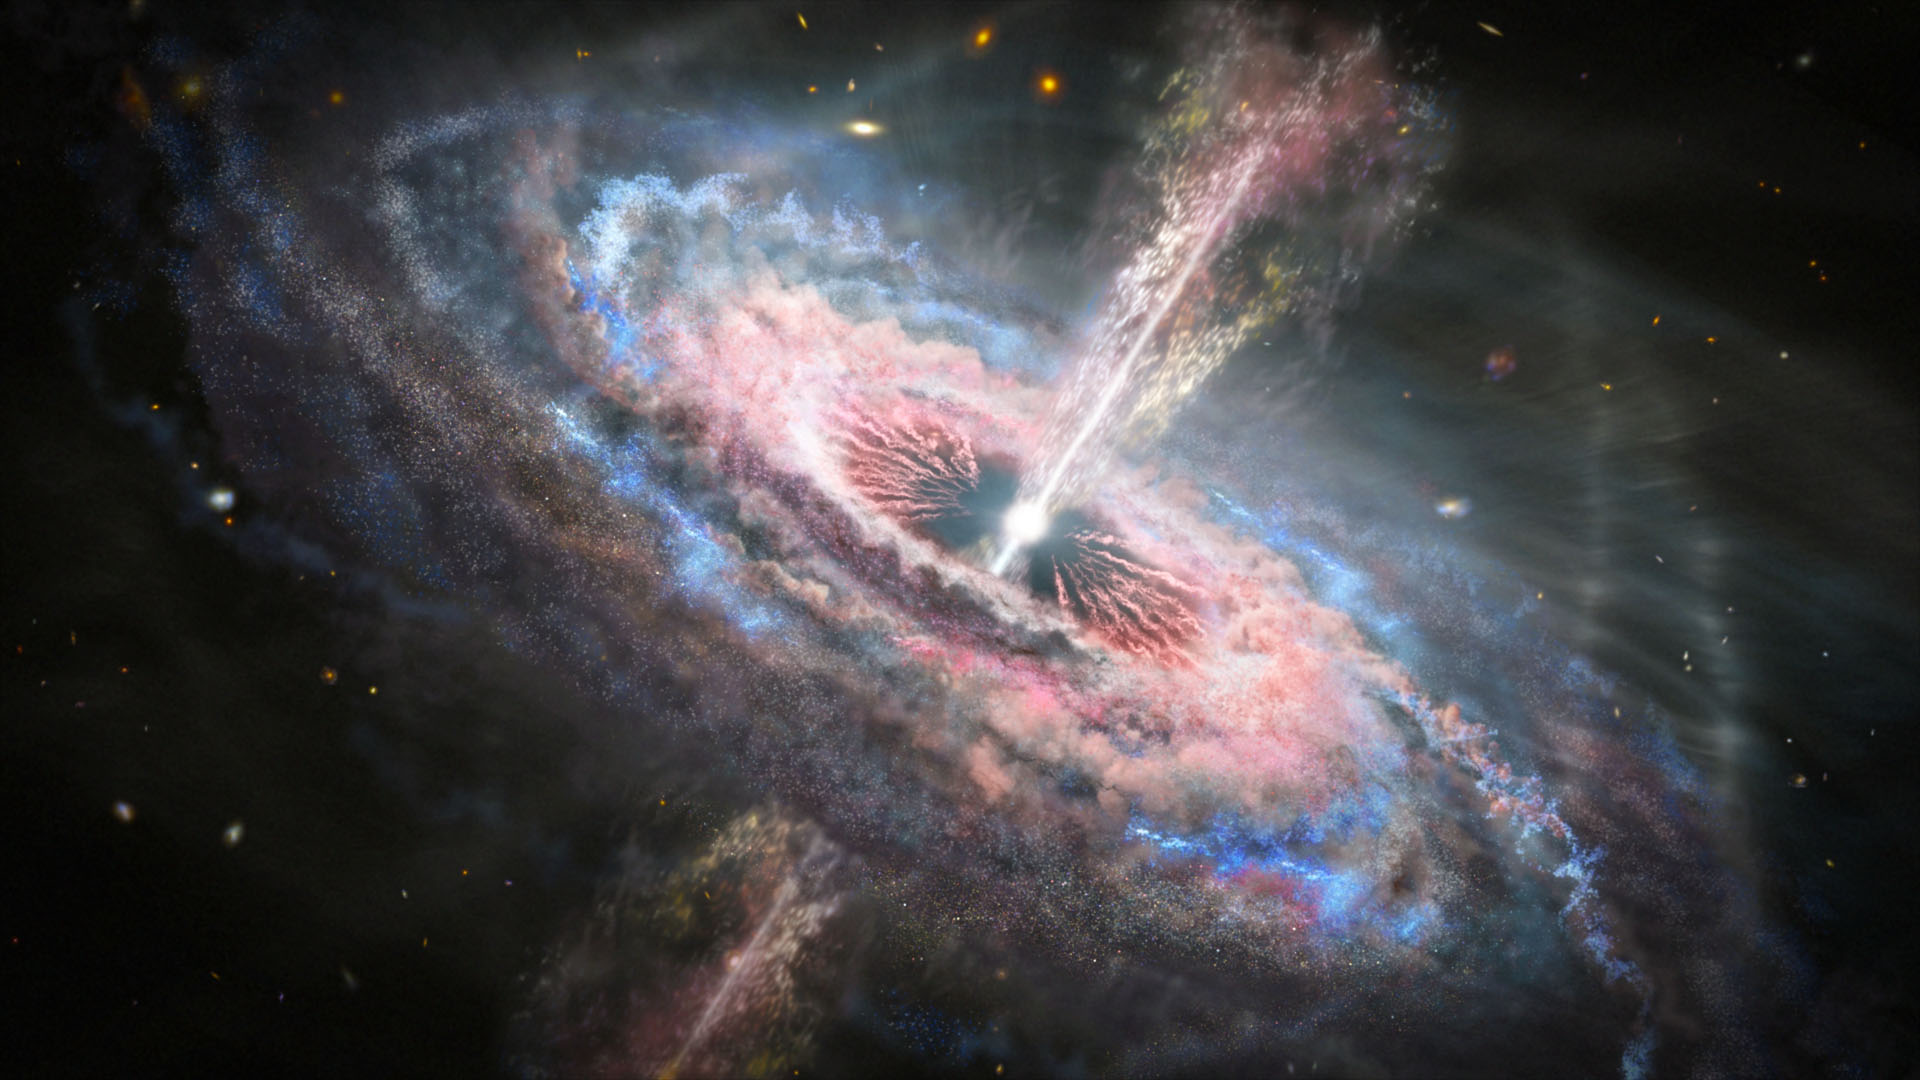 Ilustração de uma galáxia com um quasar, um buraco negro supermassivo ativo, brilhante e distante, em seu centro